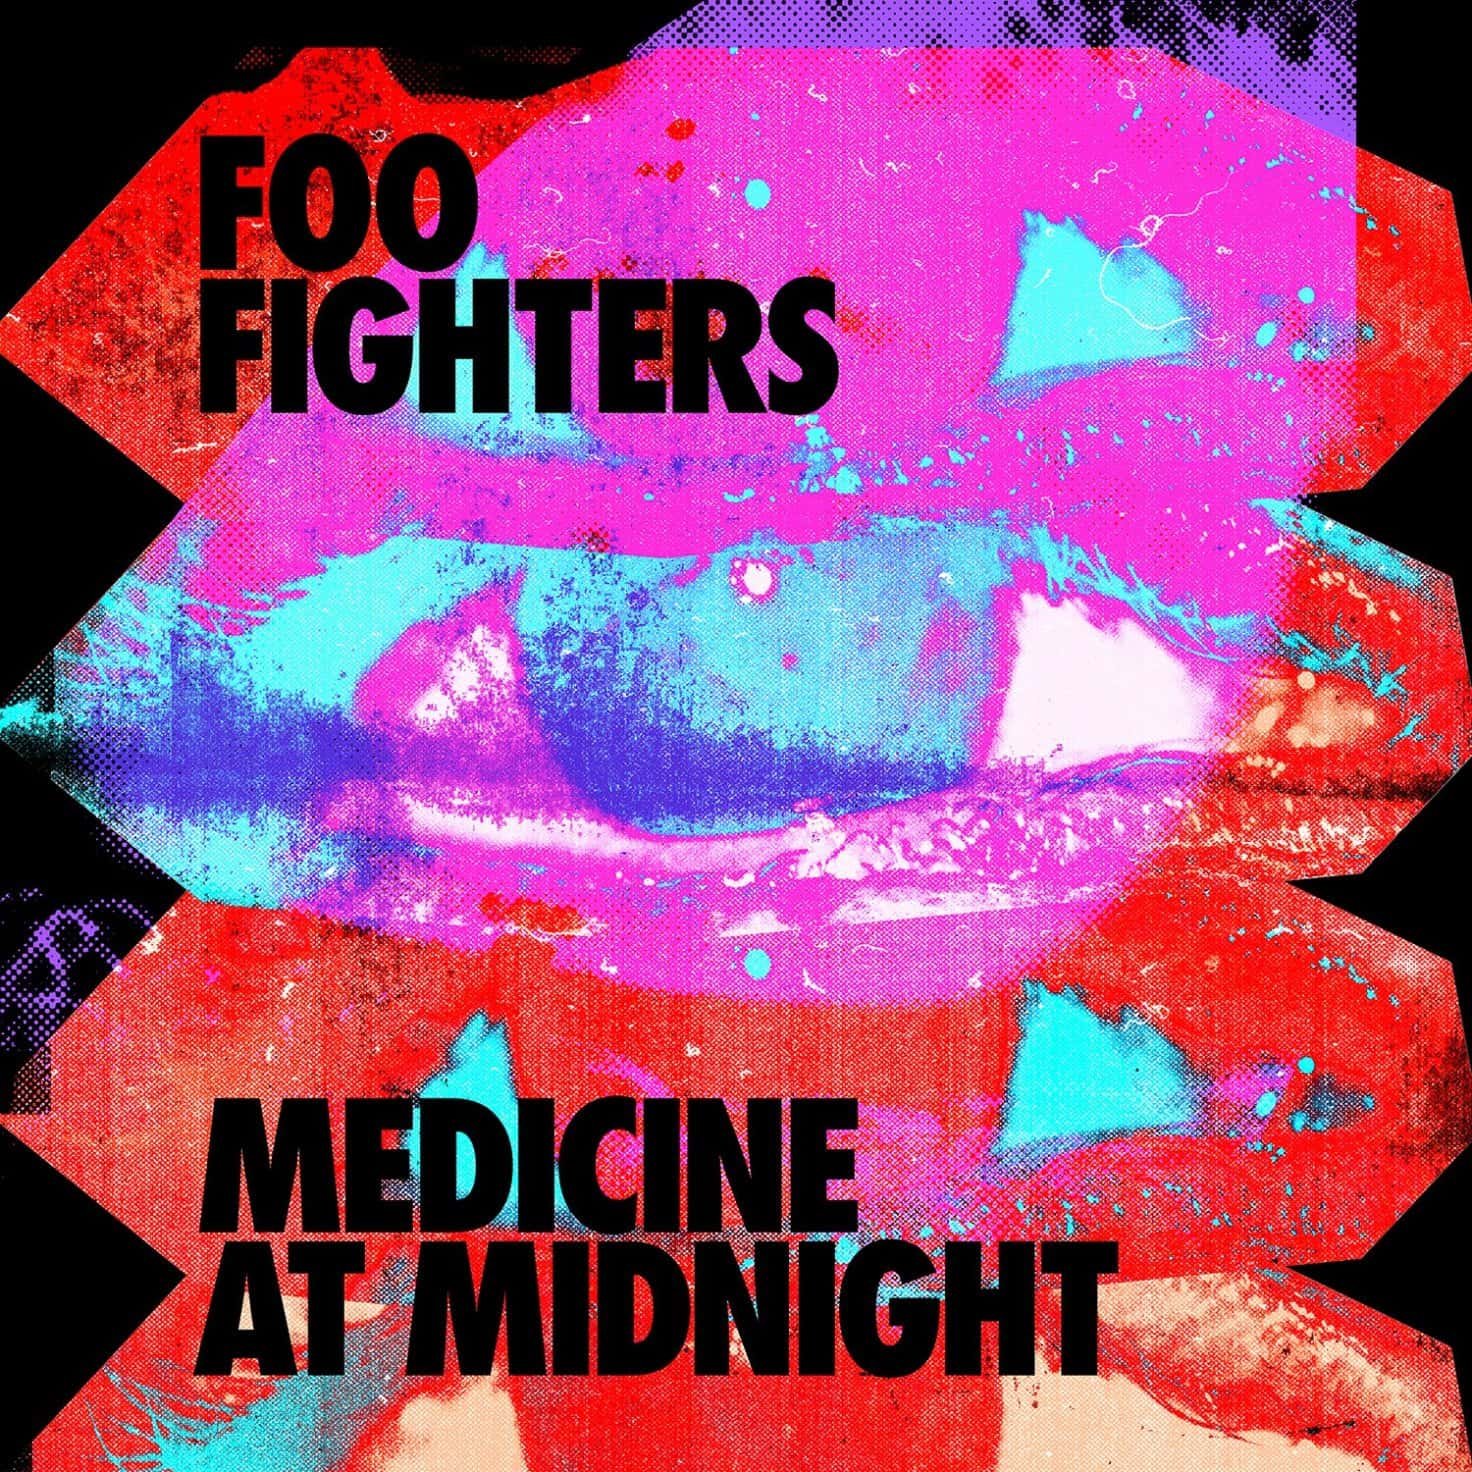 Escute Medicine at Midnight, novo disco do Foo Fighters | pop rock | Revista Ambrosia